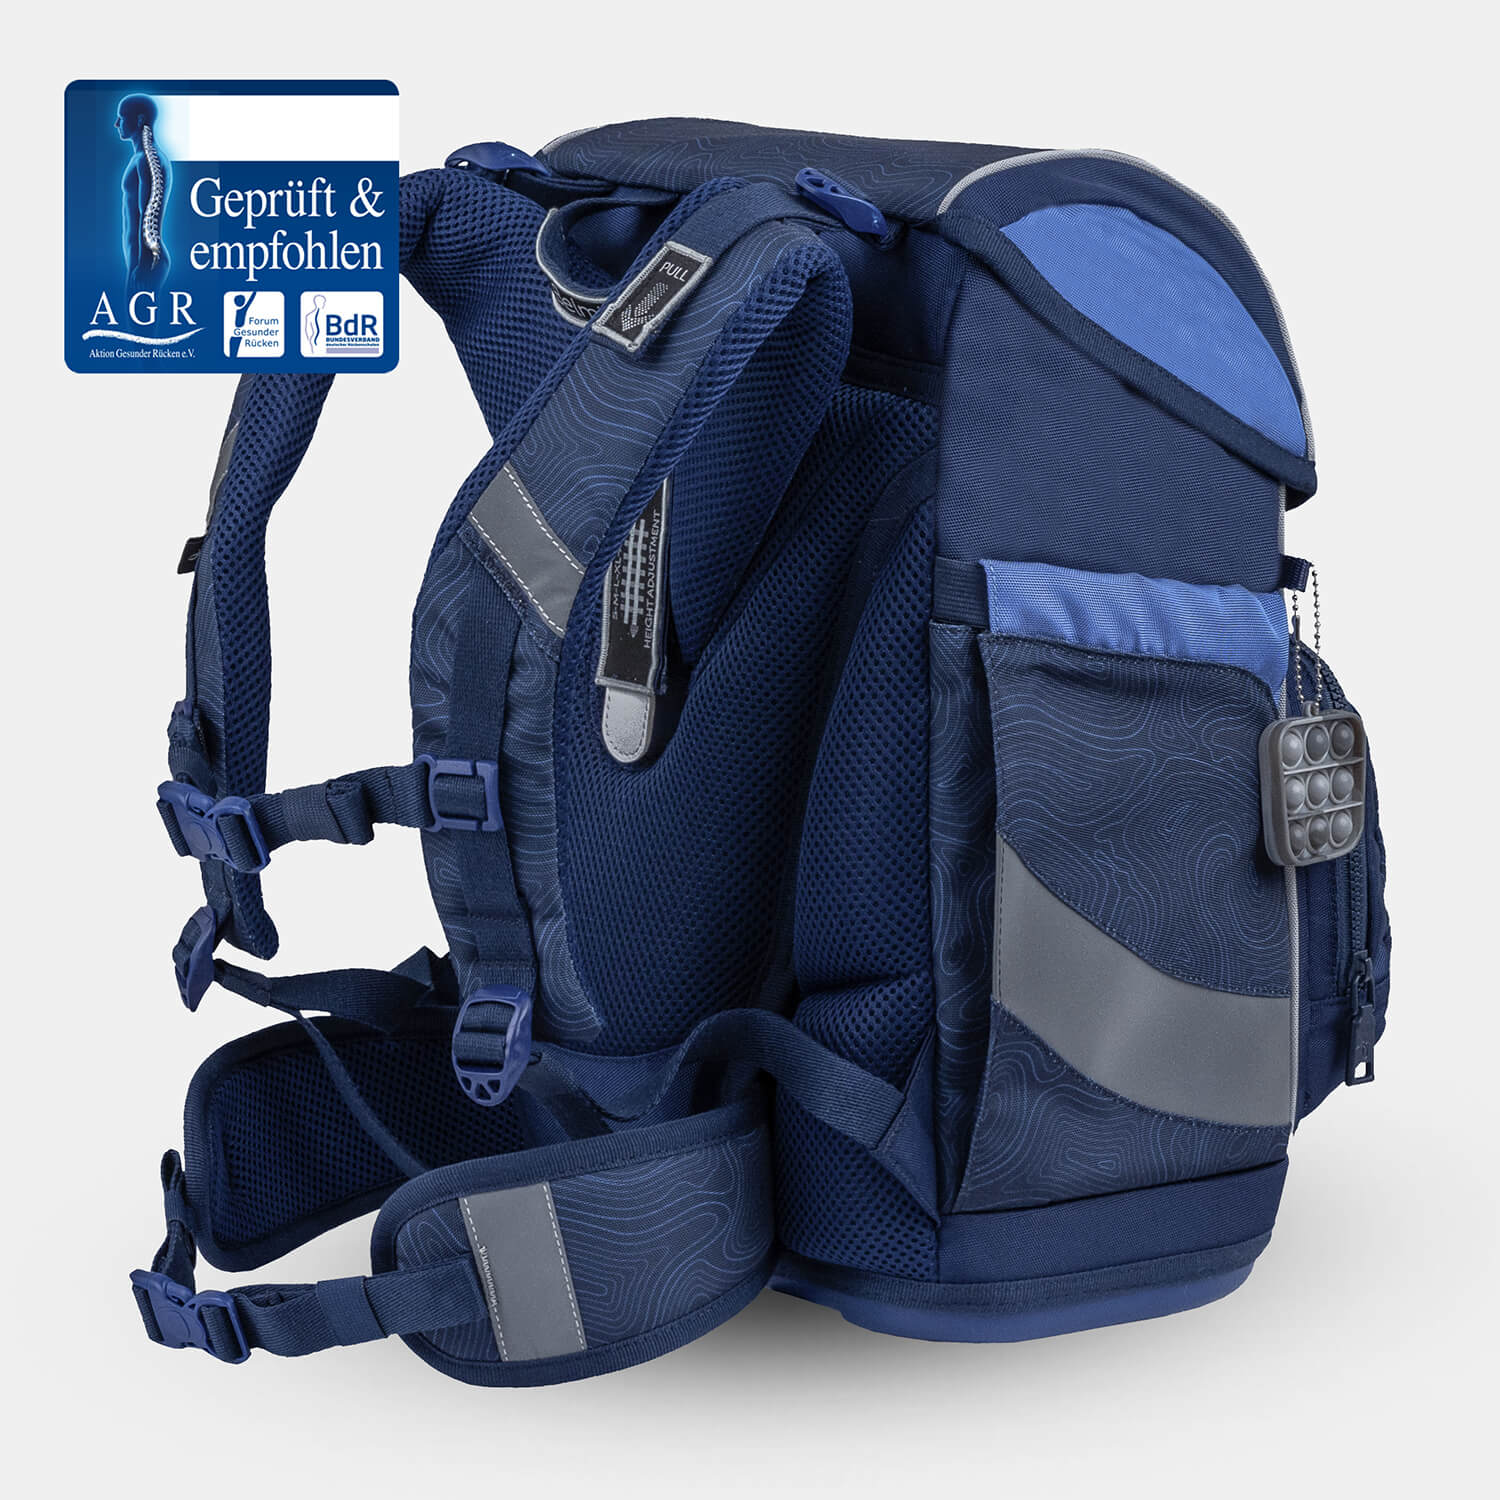 Smarty Plus Topographic Schoolbag set 5pcs.